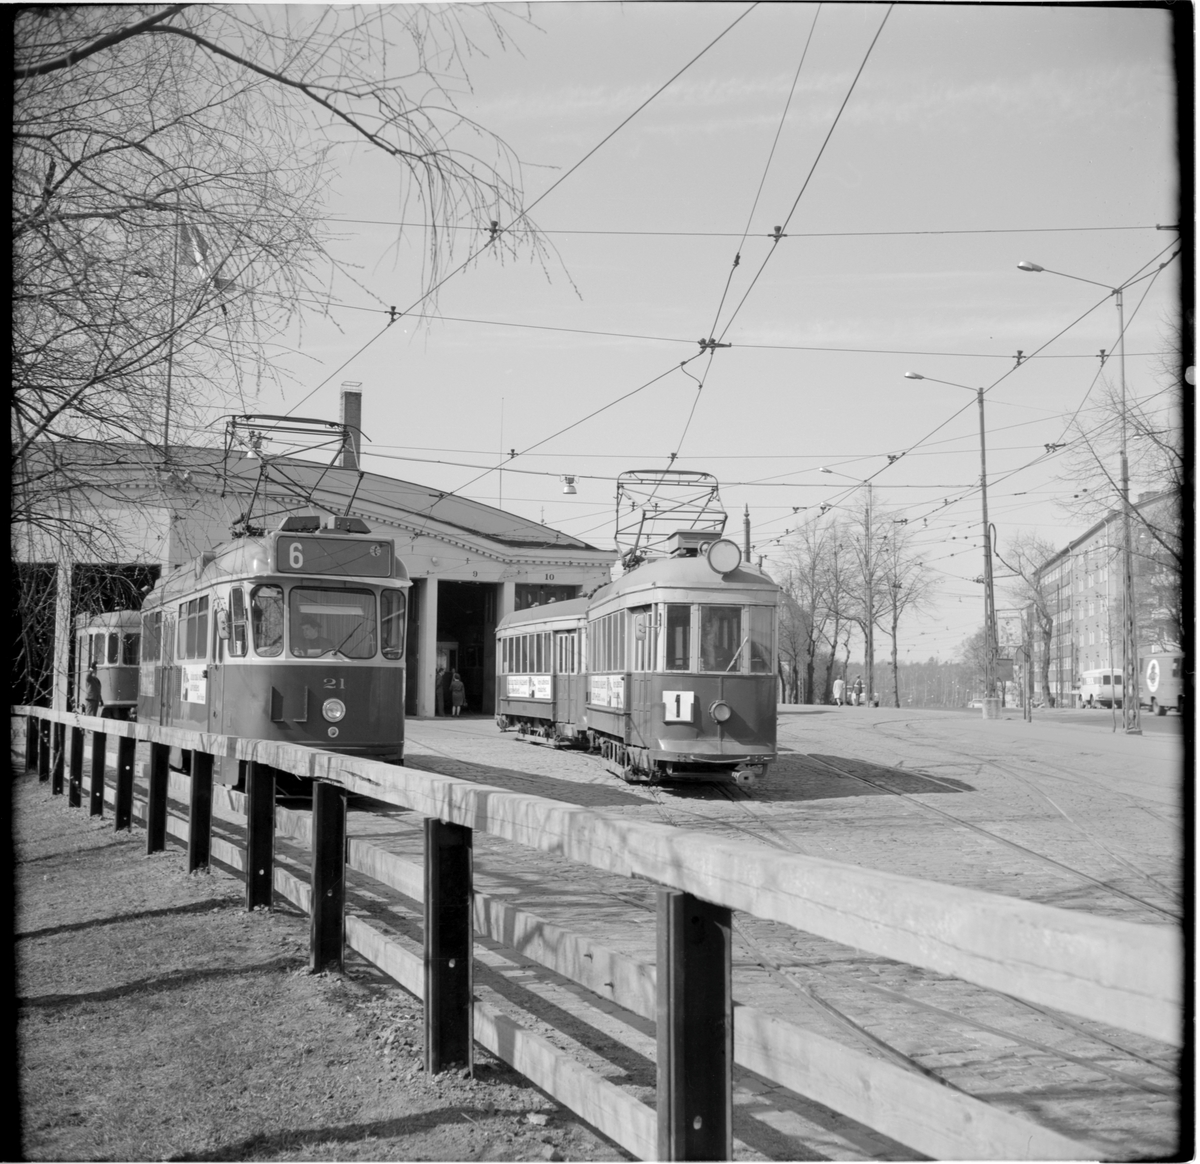 Helsingin Kaupupungin Liikennelaitos, HKL RM3 21linje 6 och HKL spårvagnssätt linje 1 utanför vagnhallen i Vallgård.